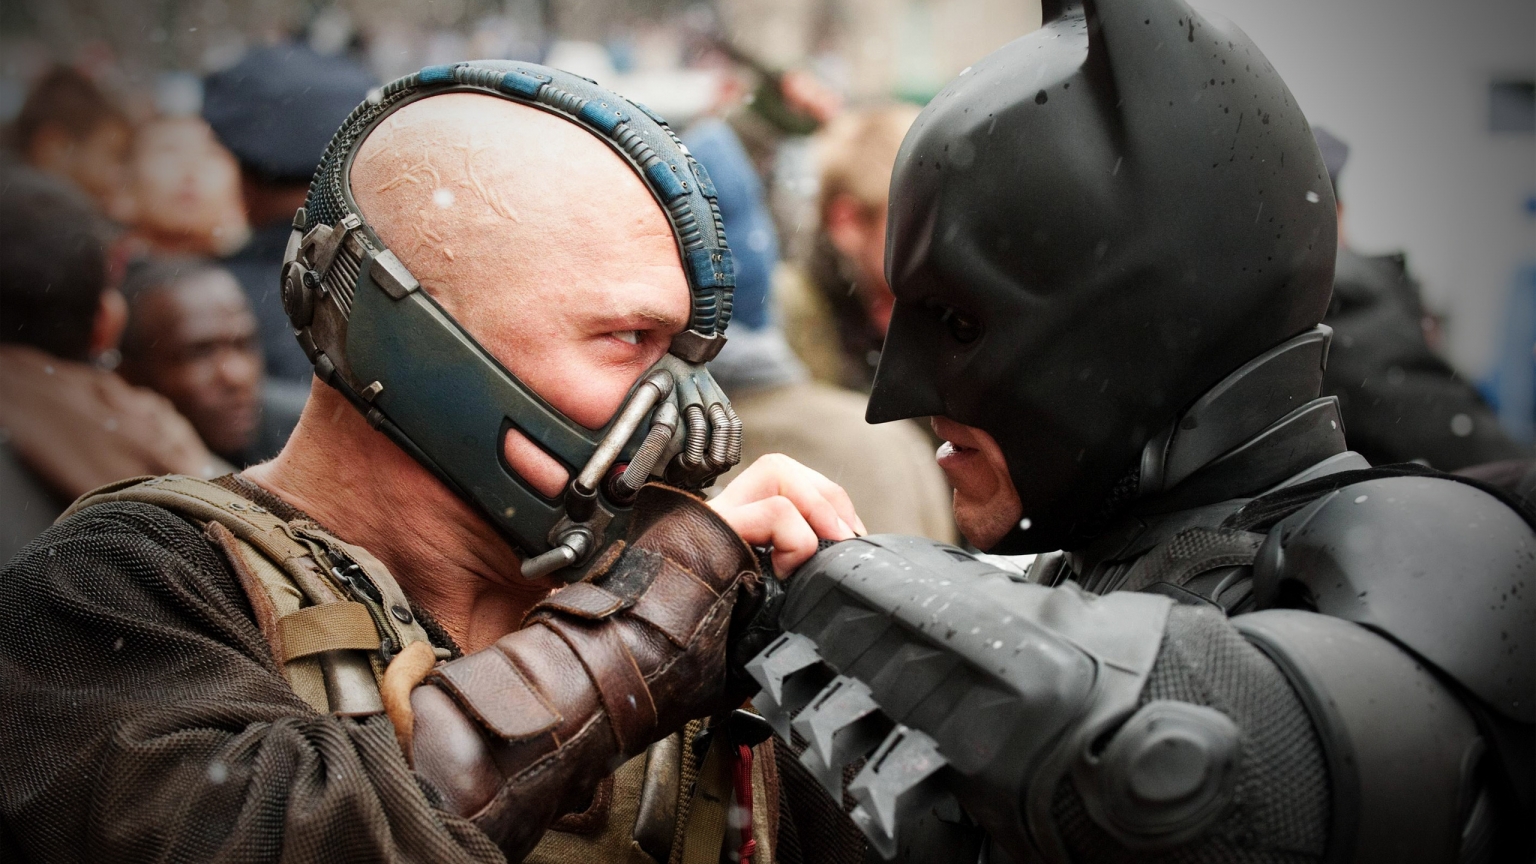 Bane vs Batman for 1536 x 864 HDTV resolution